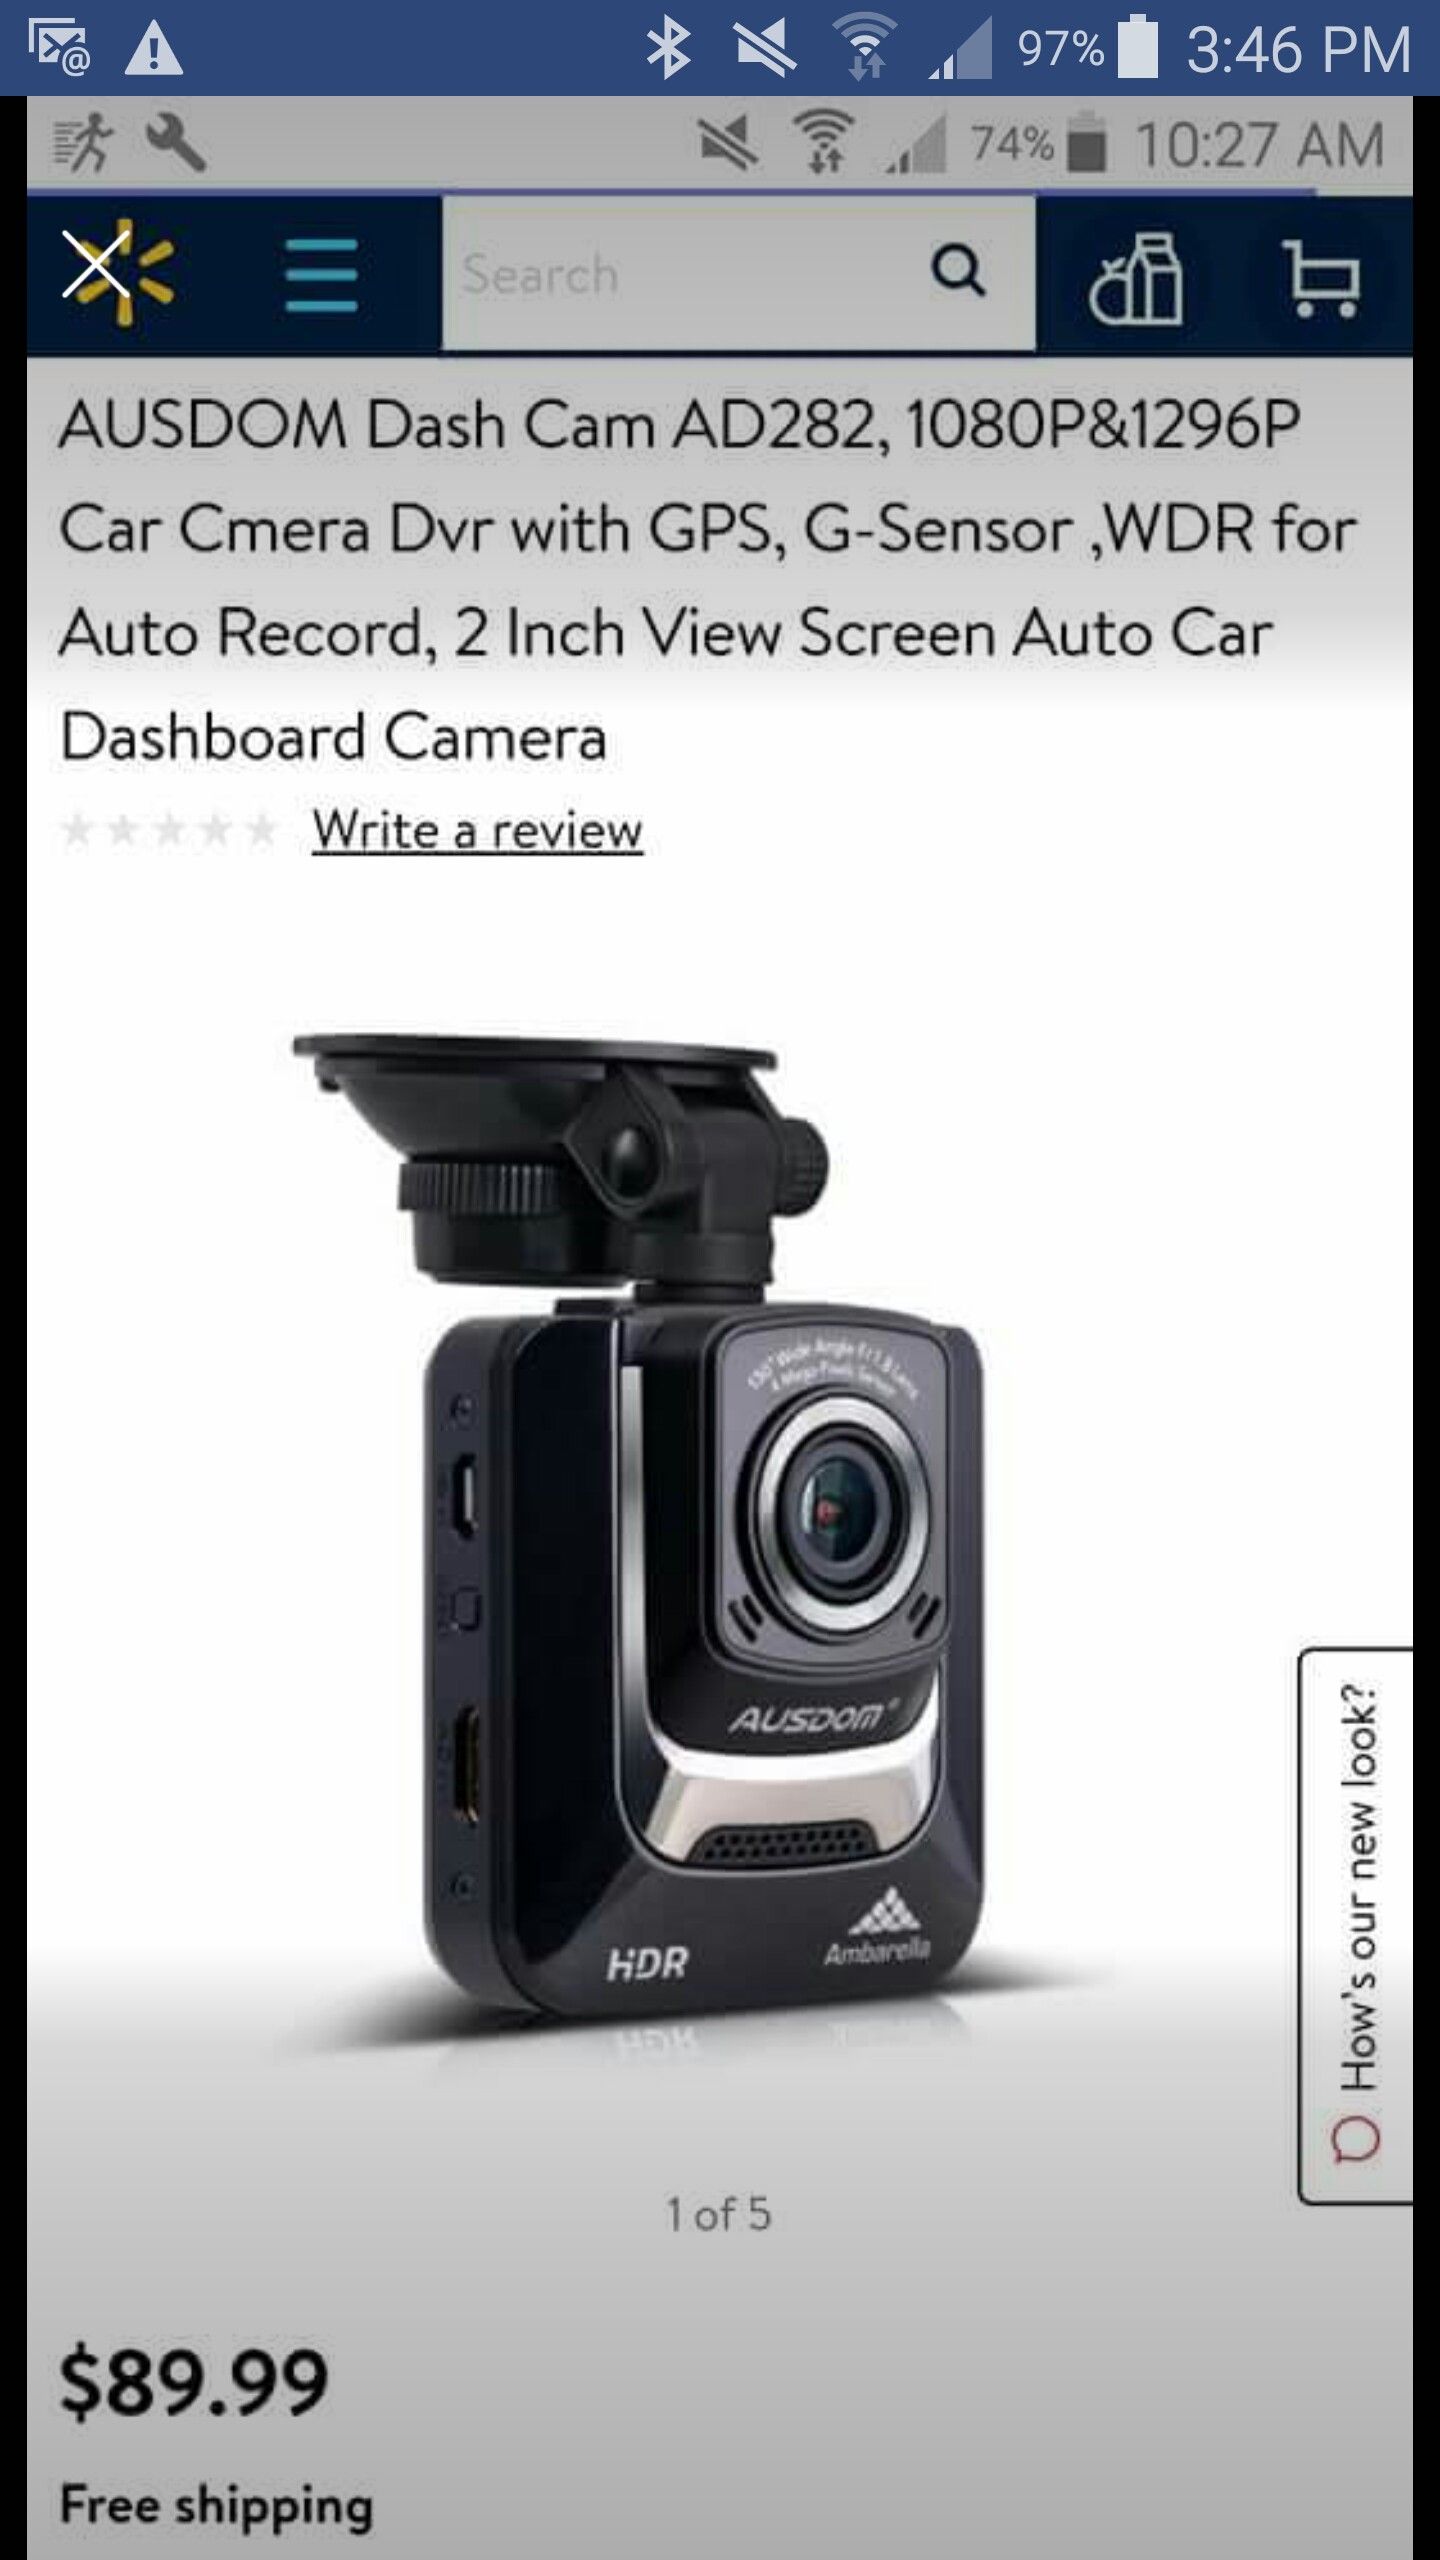 New dash cam $40